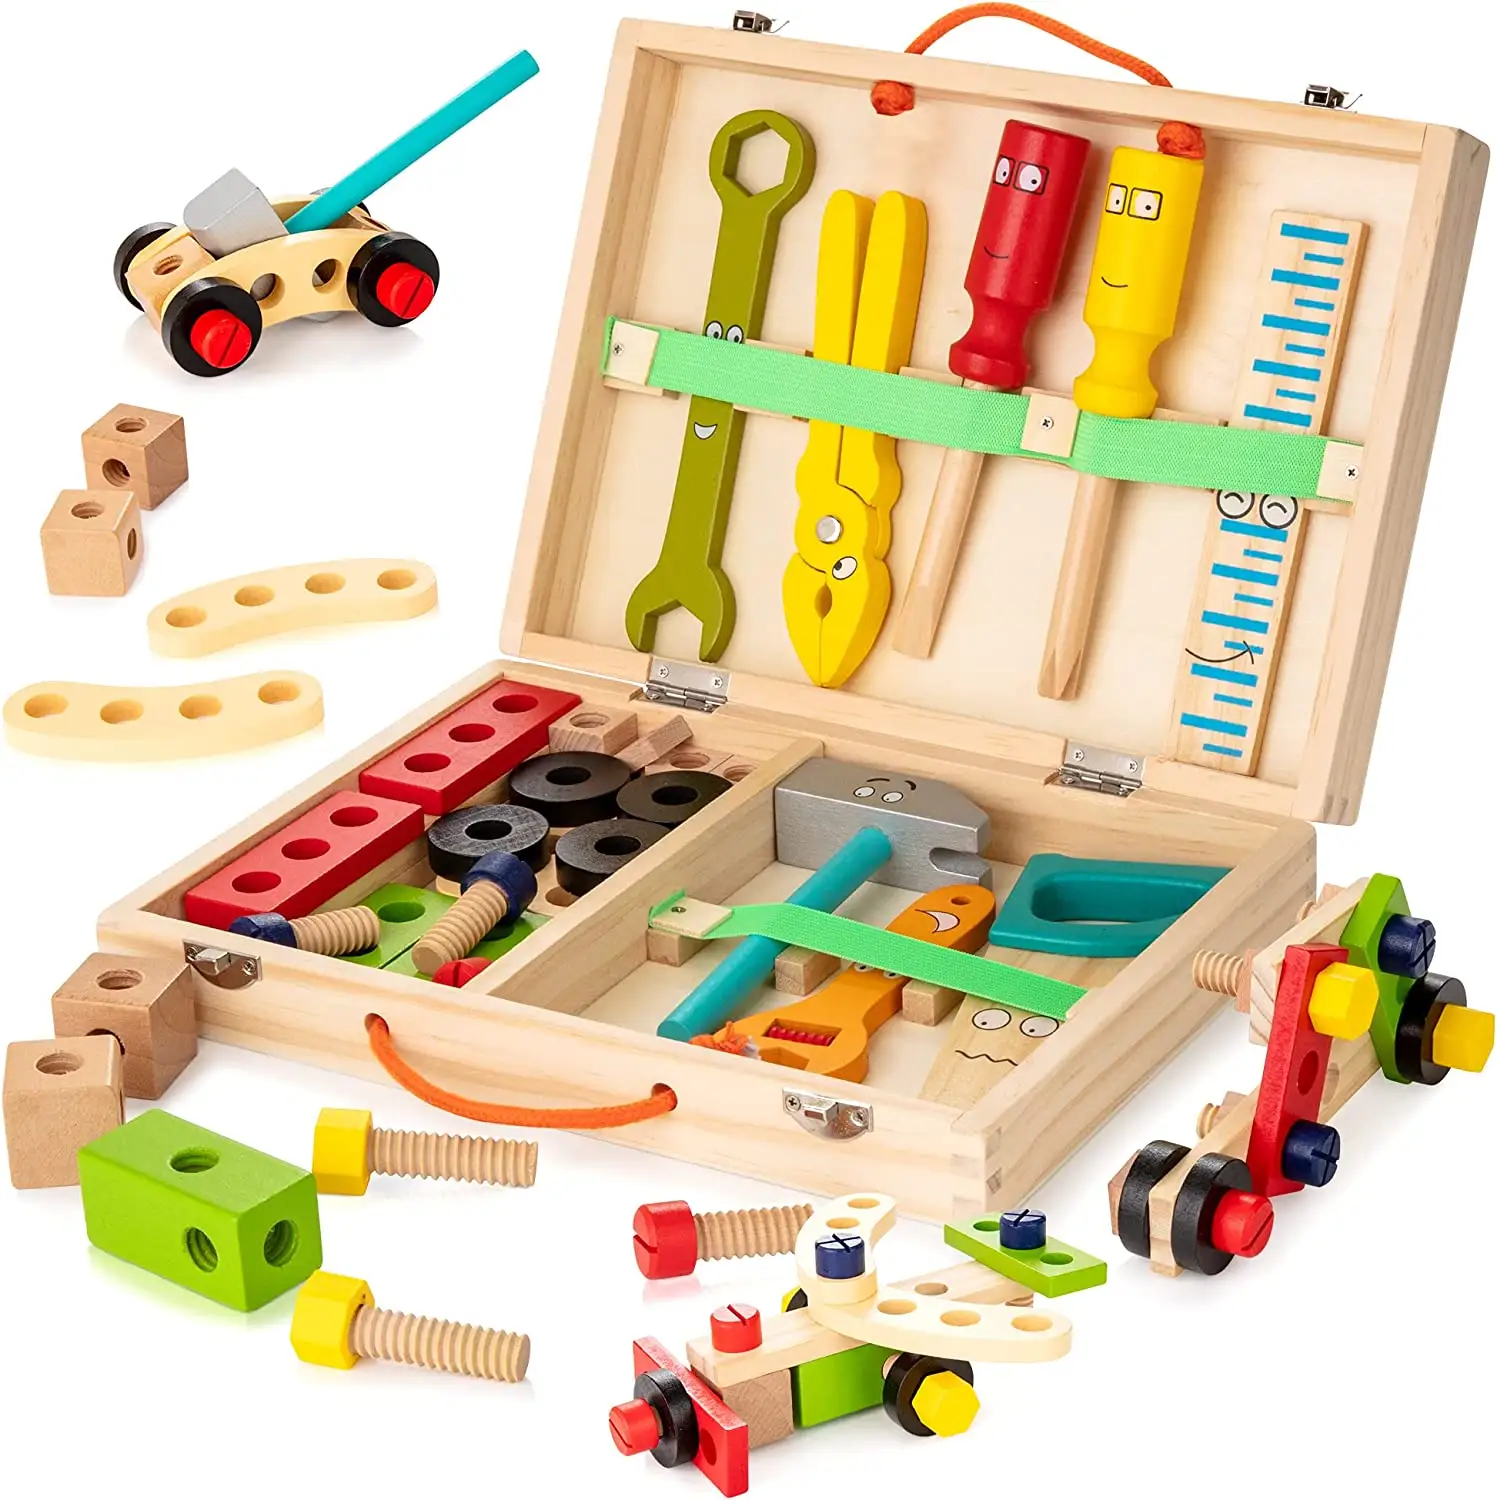 Kit di attrezzi 37 pezzi Set di strumenti per bambini in legno cassetta degli attrezzi giocattoli educativi Montessori per la costruzione di Stem